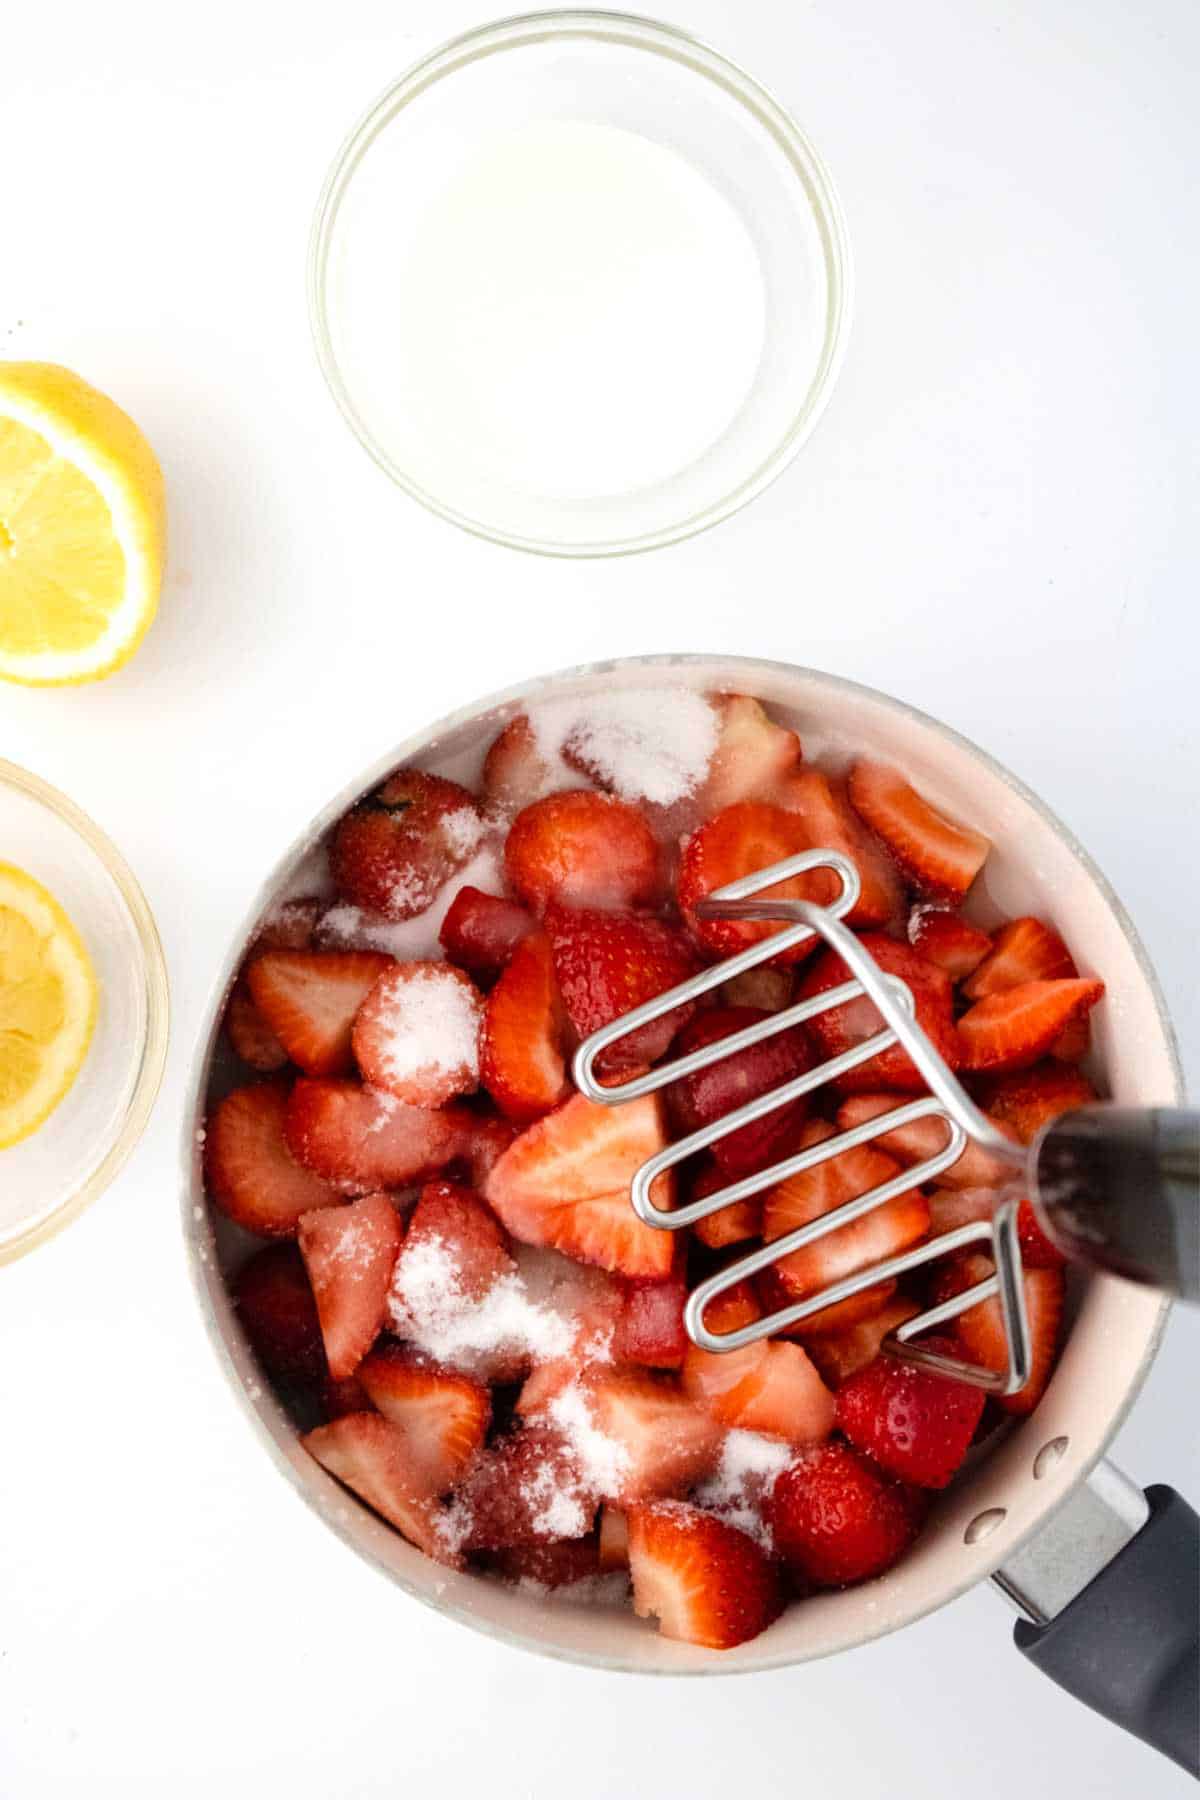 mashing tool smashing strawberries in a sauce pan.